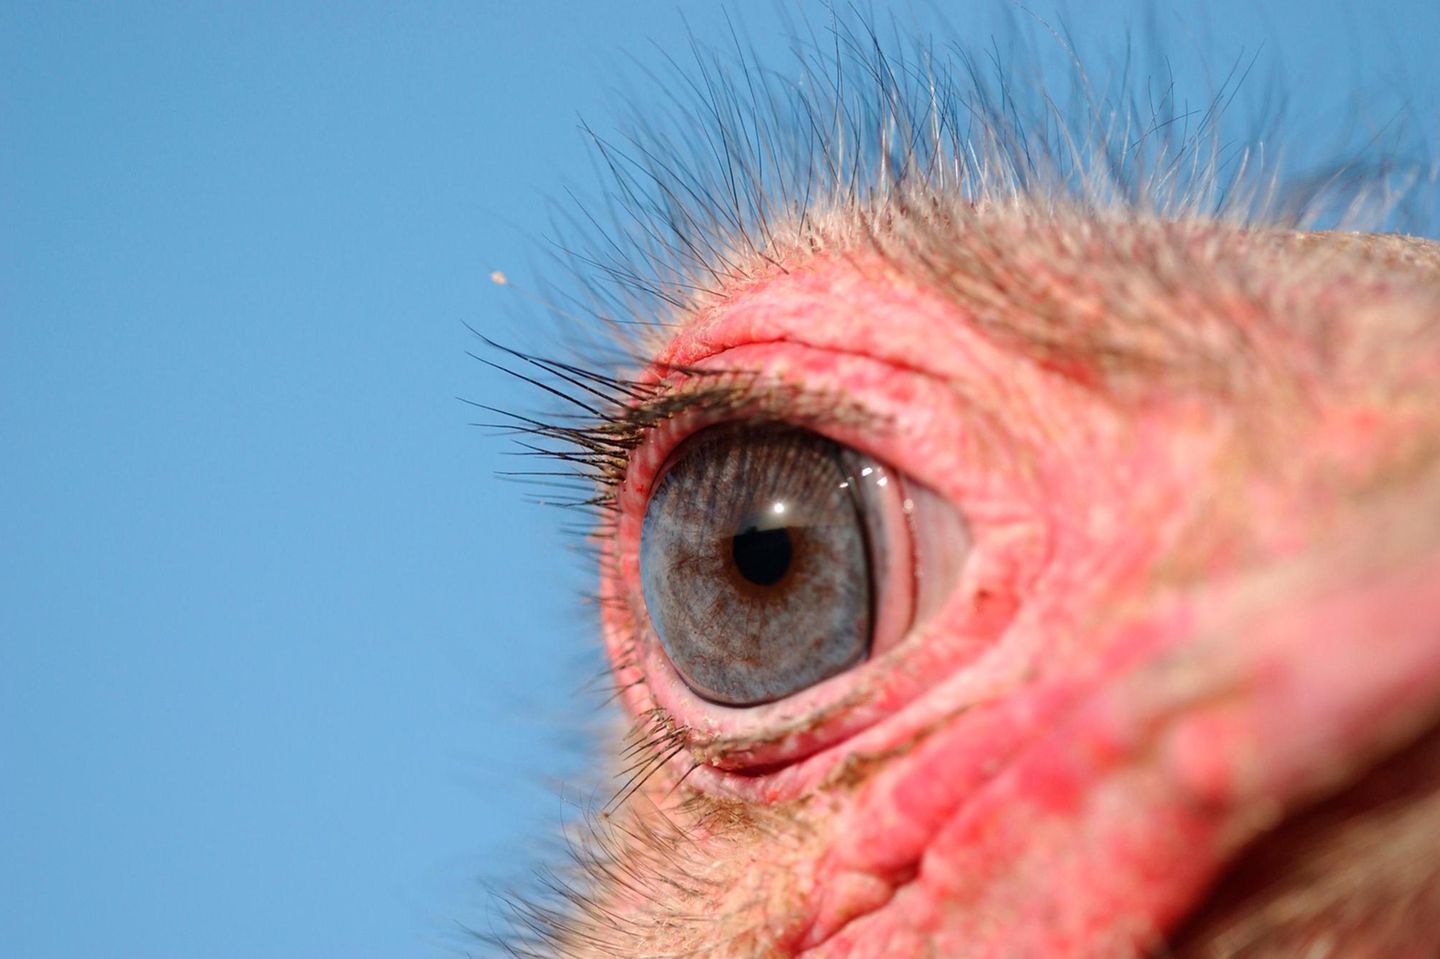 Hat die größten Augen aller Landlebewesen, erkennt Tiere noch in 3,5 Kilometer Entfernung.